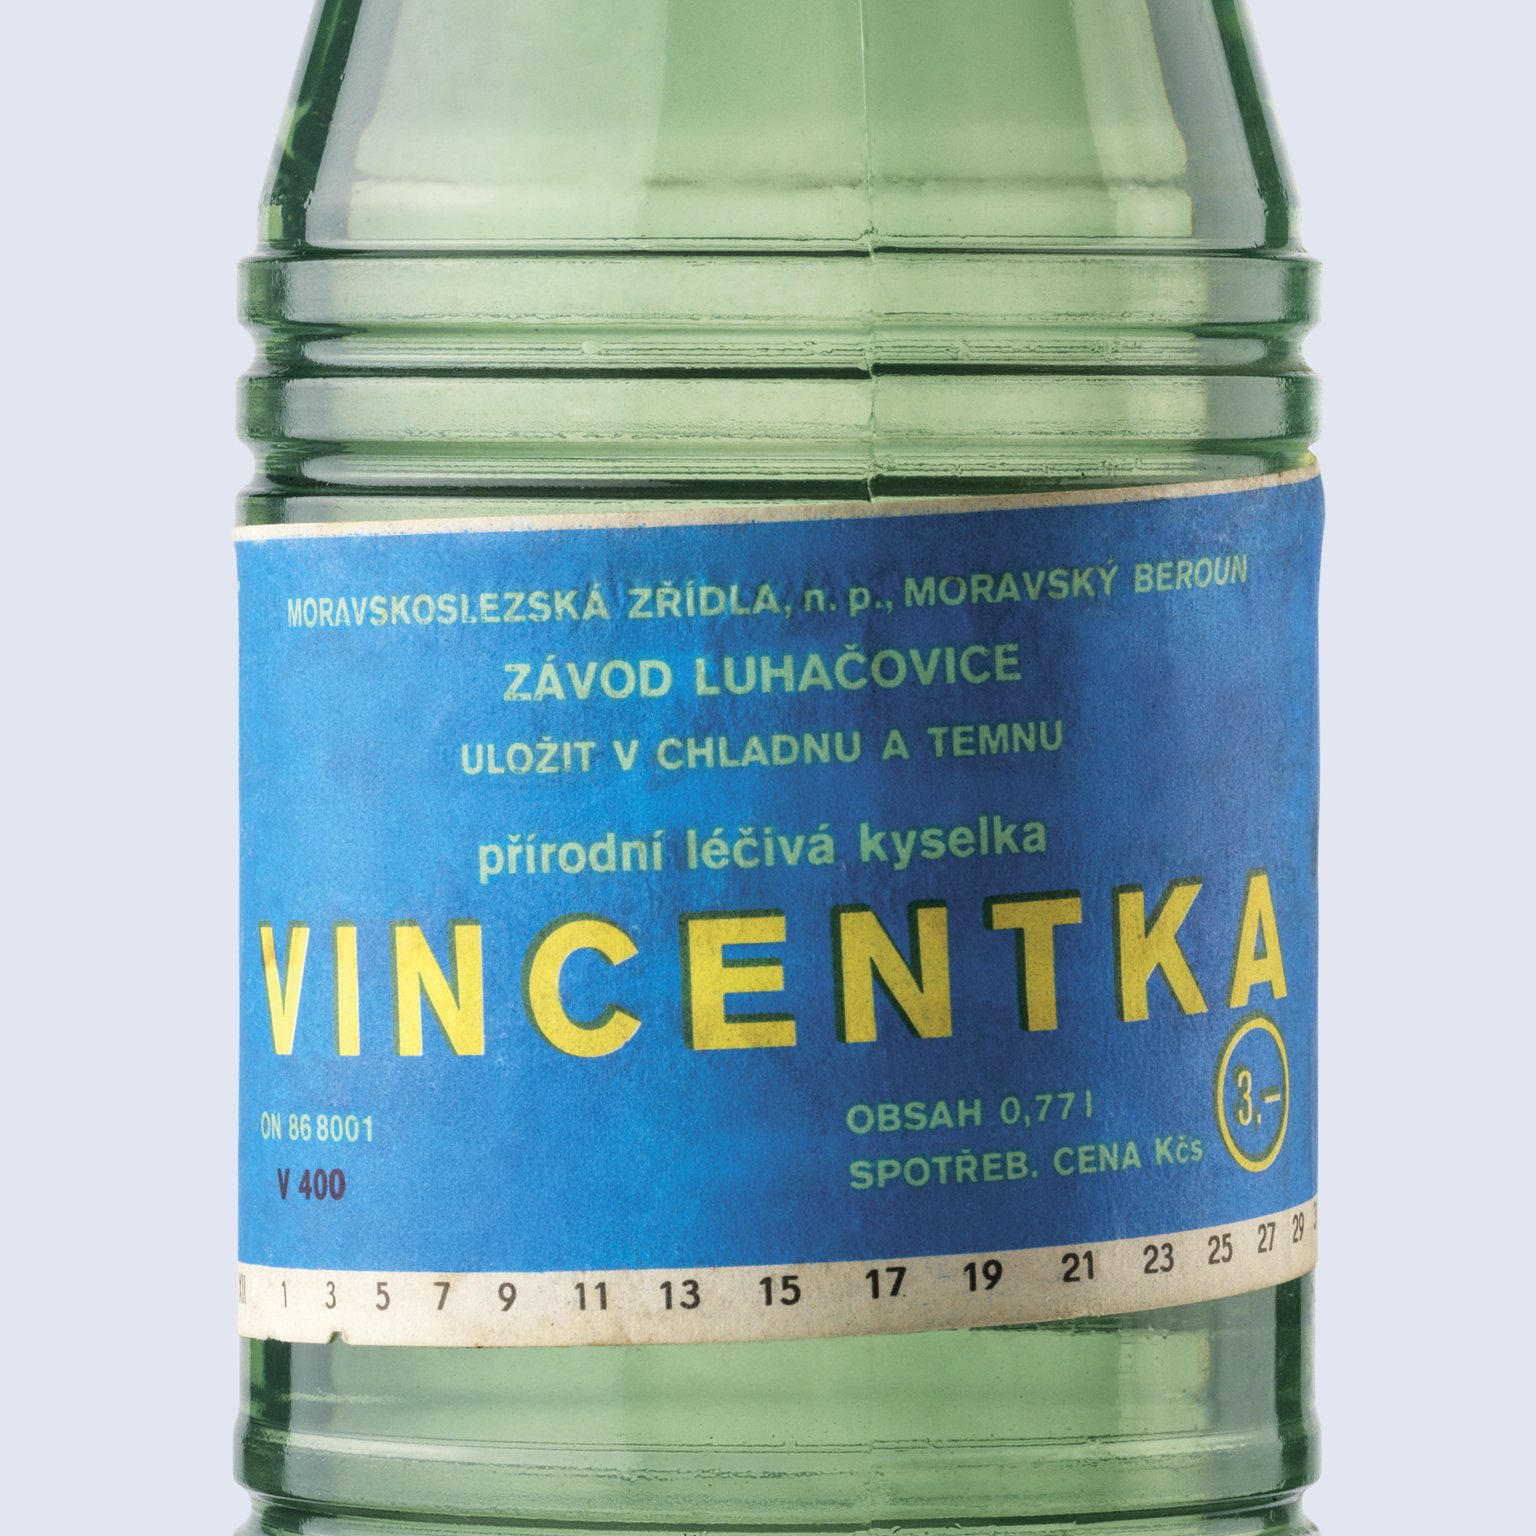 Change of the Vincentka bottling technology